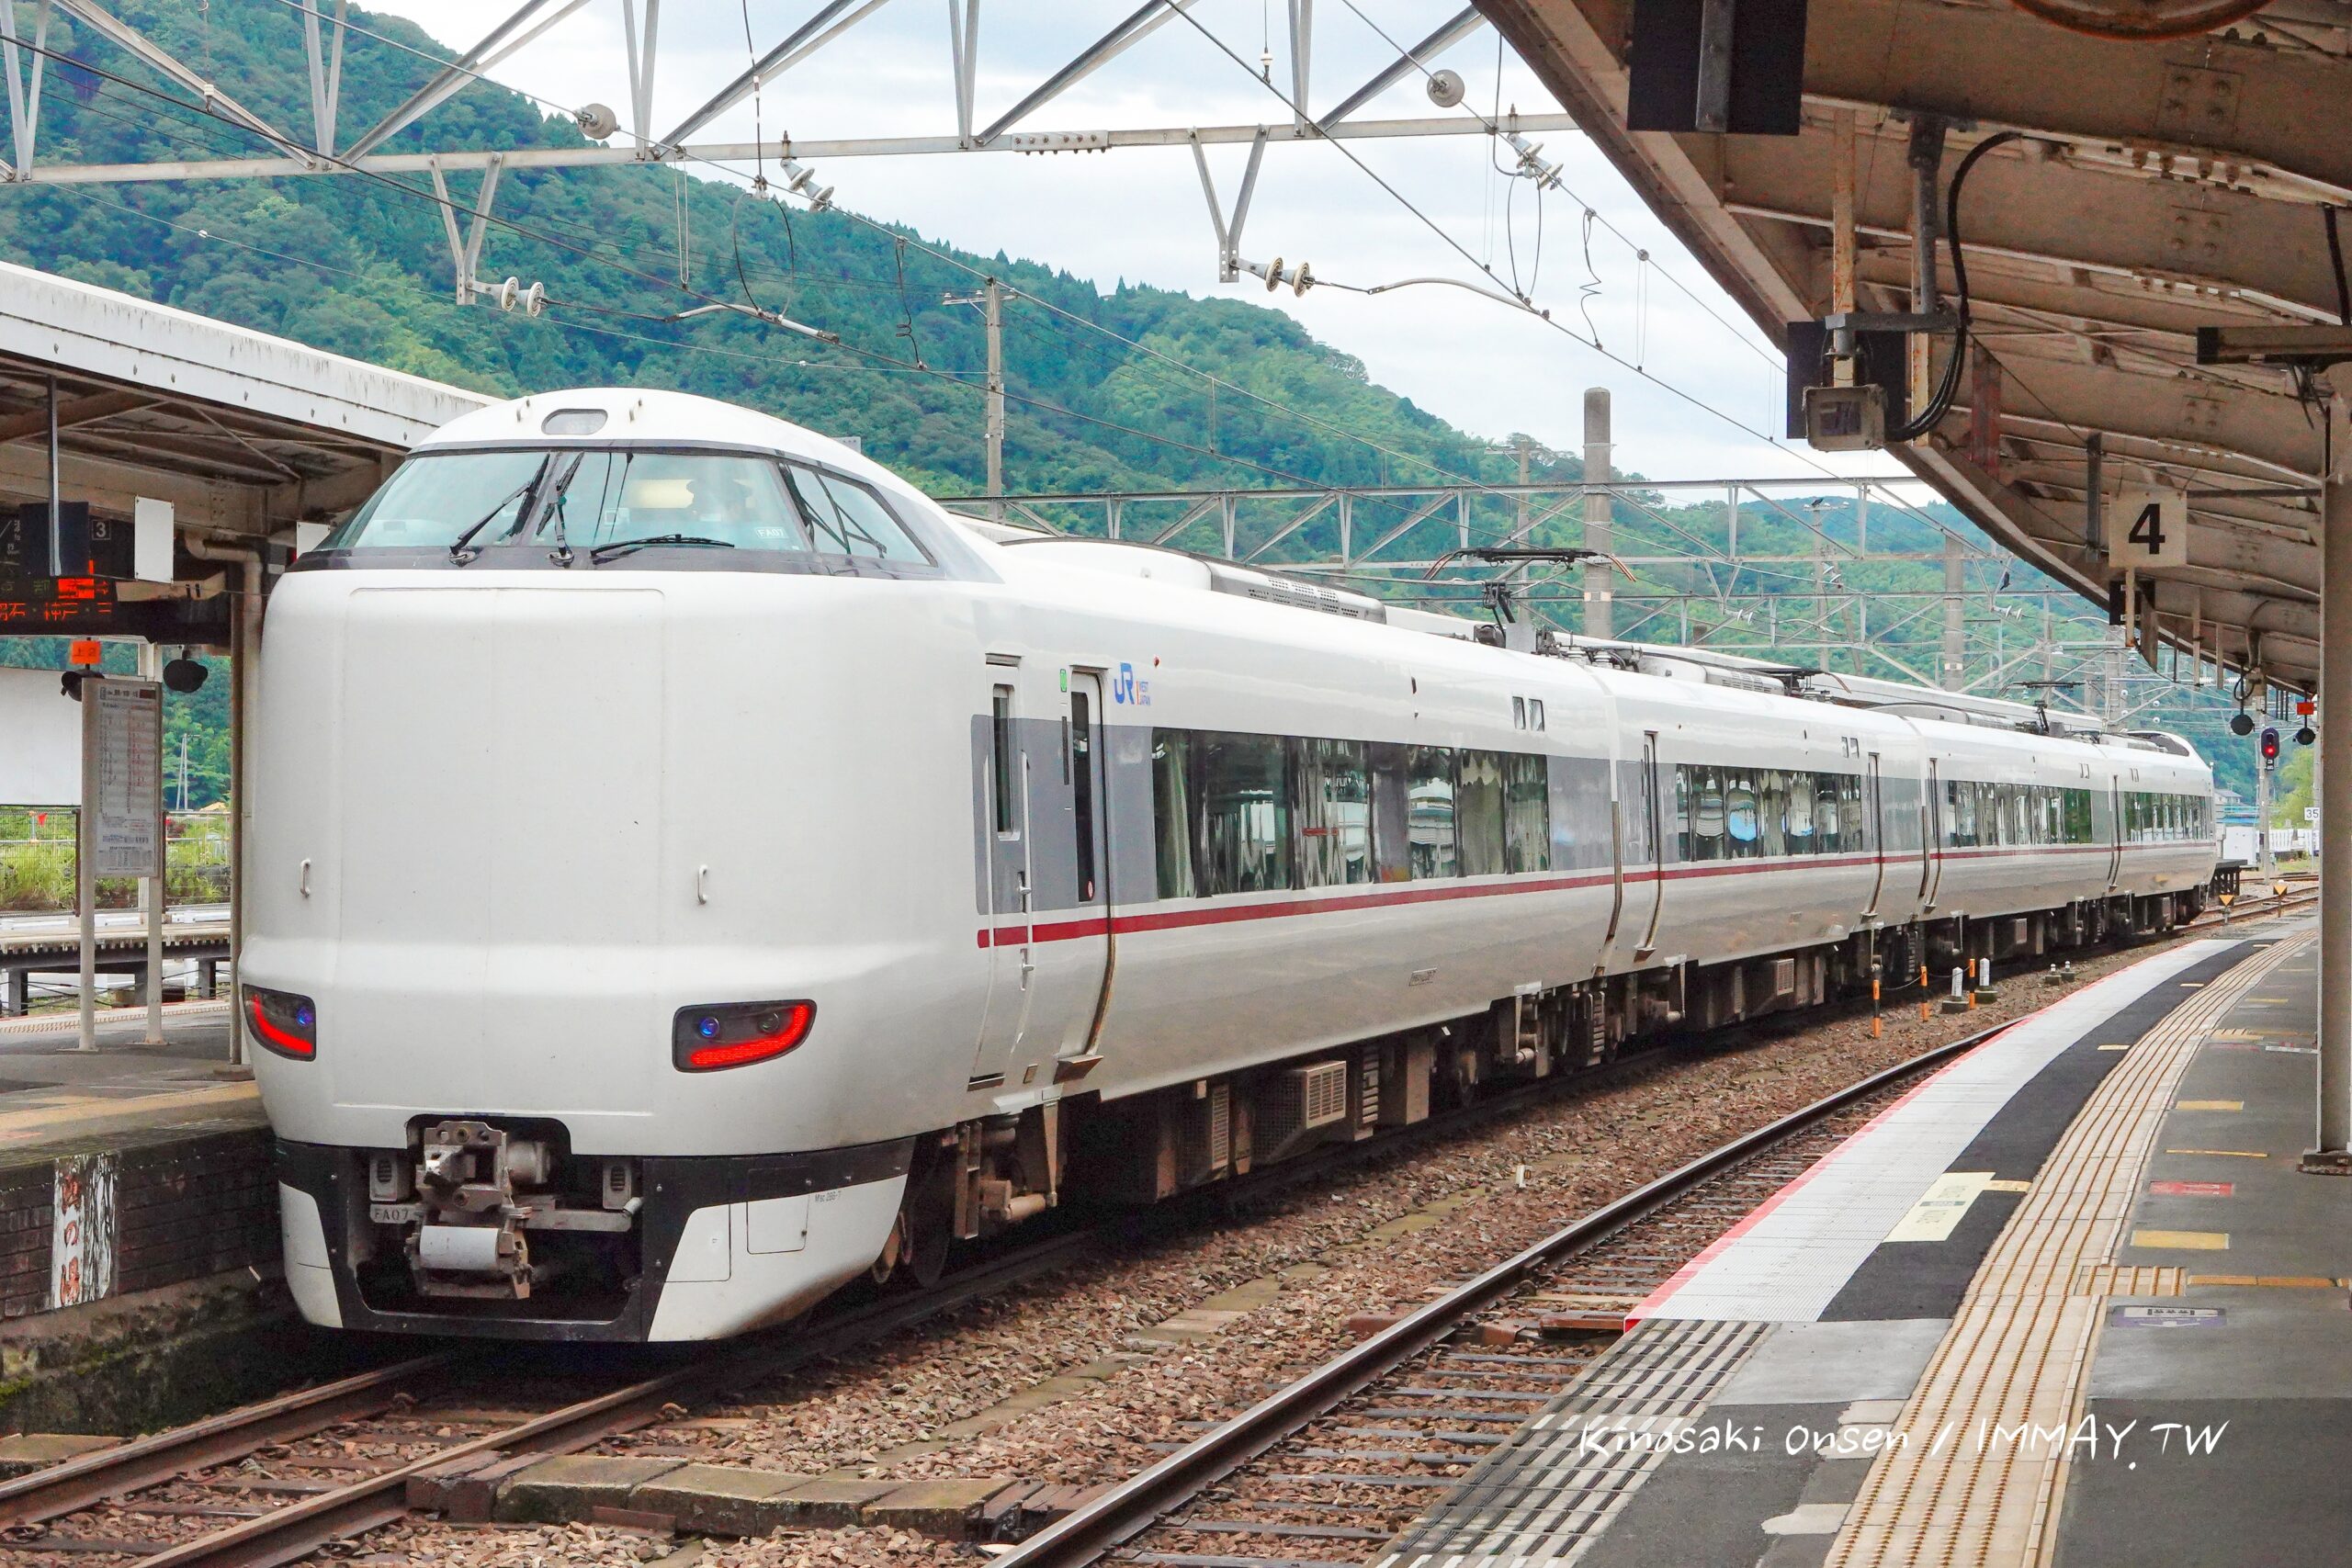 關西鐵道旅行 | 京都前往城崎溫泉的交通方式 : 特急列車城崎號 きのさき。帶著關西地區鐵路周遊券去旅行，實際搭乘記錄 @嘿!部落!